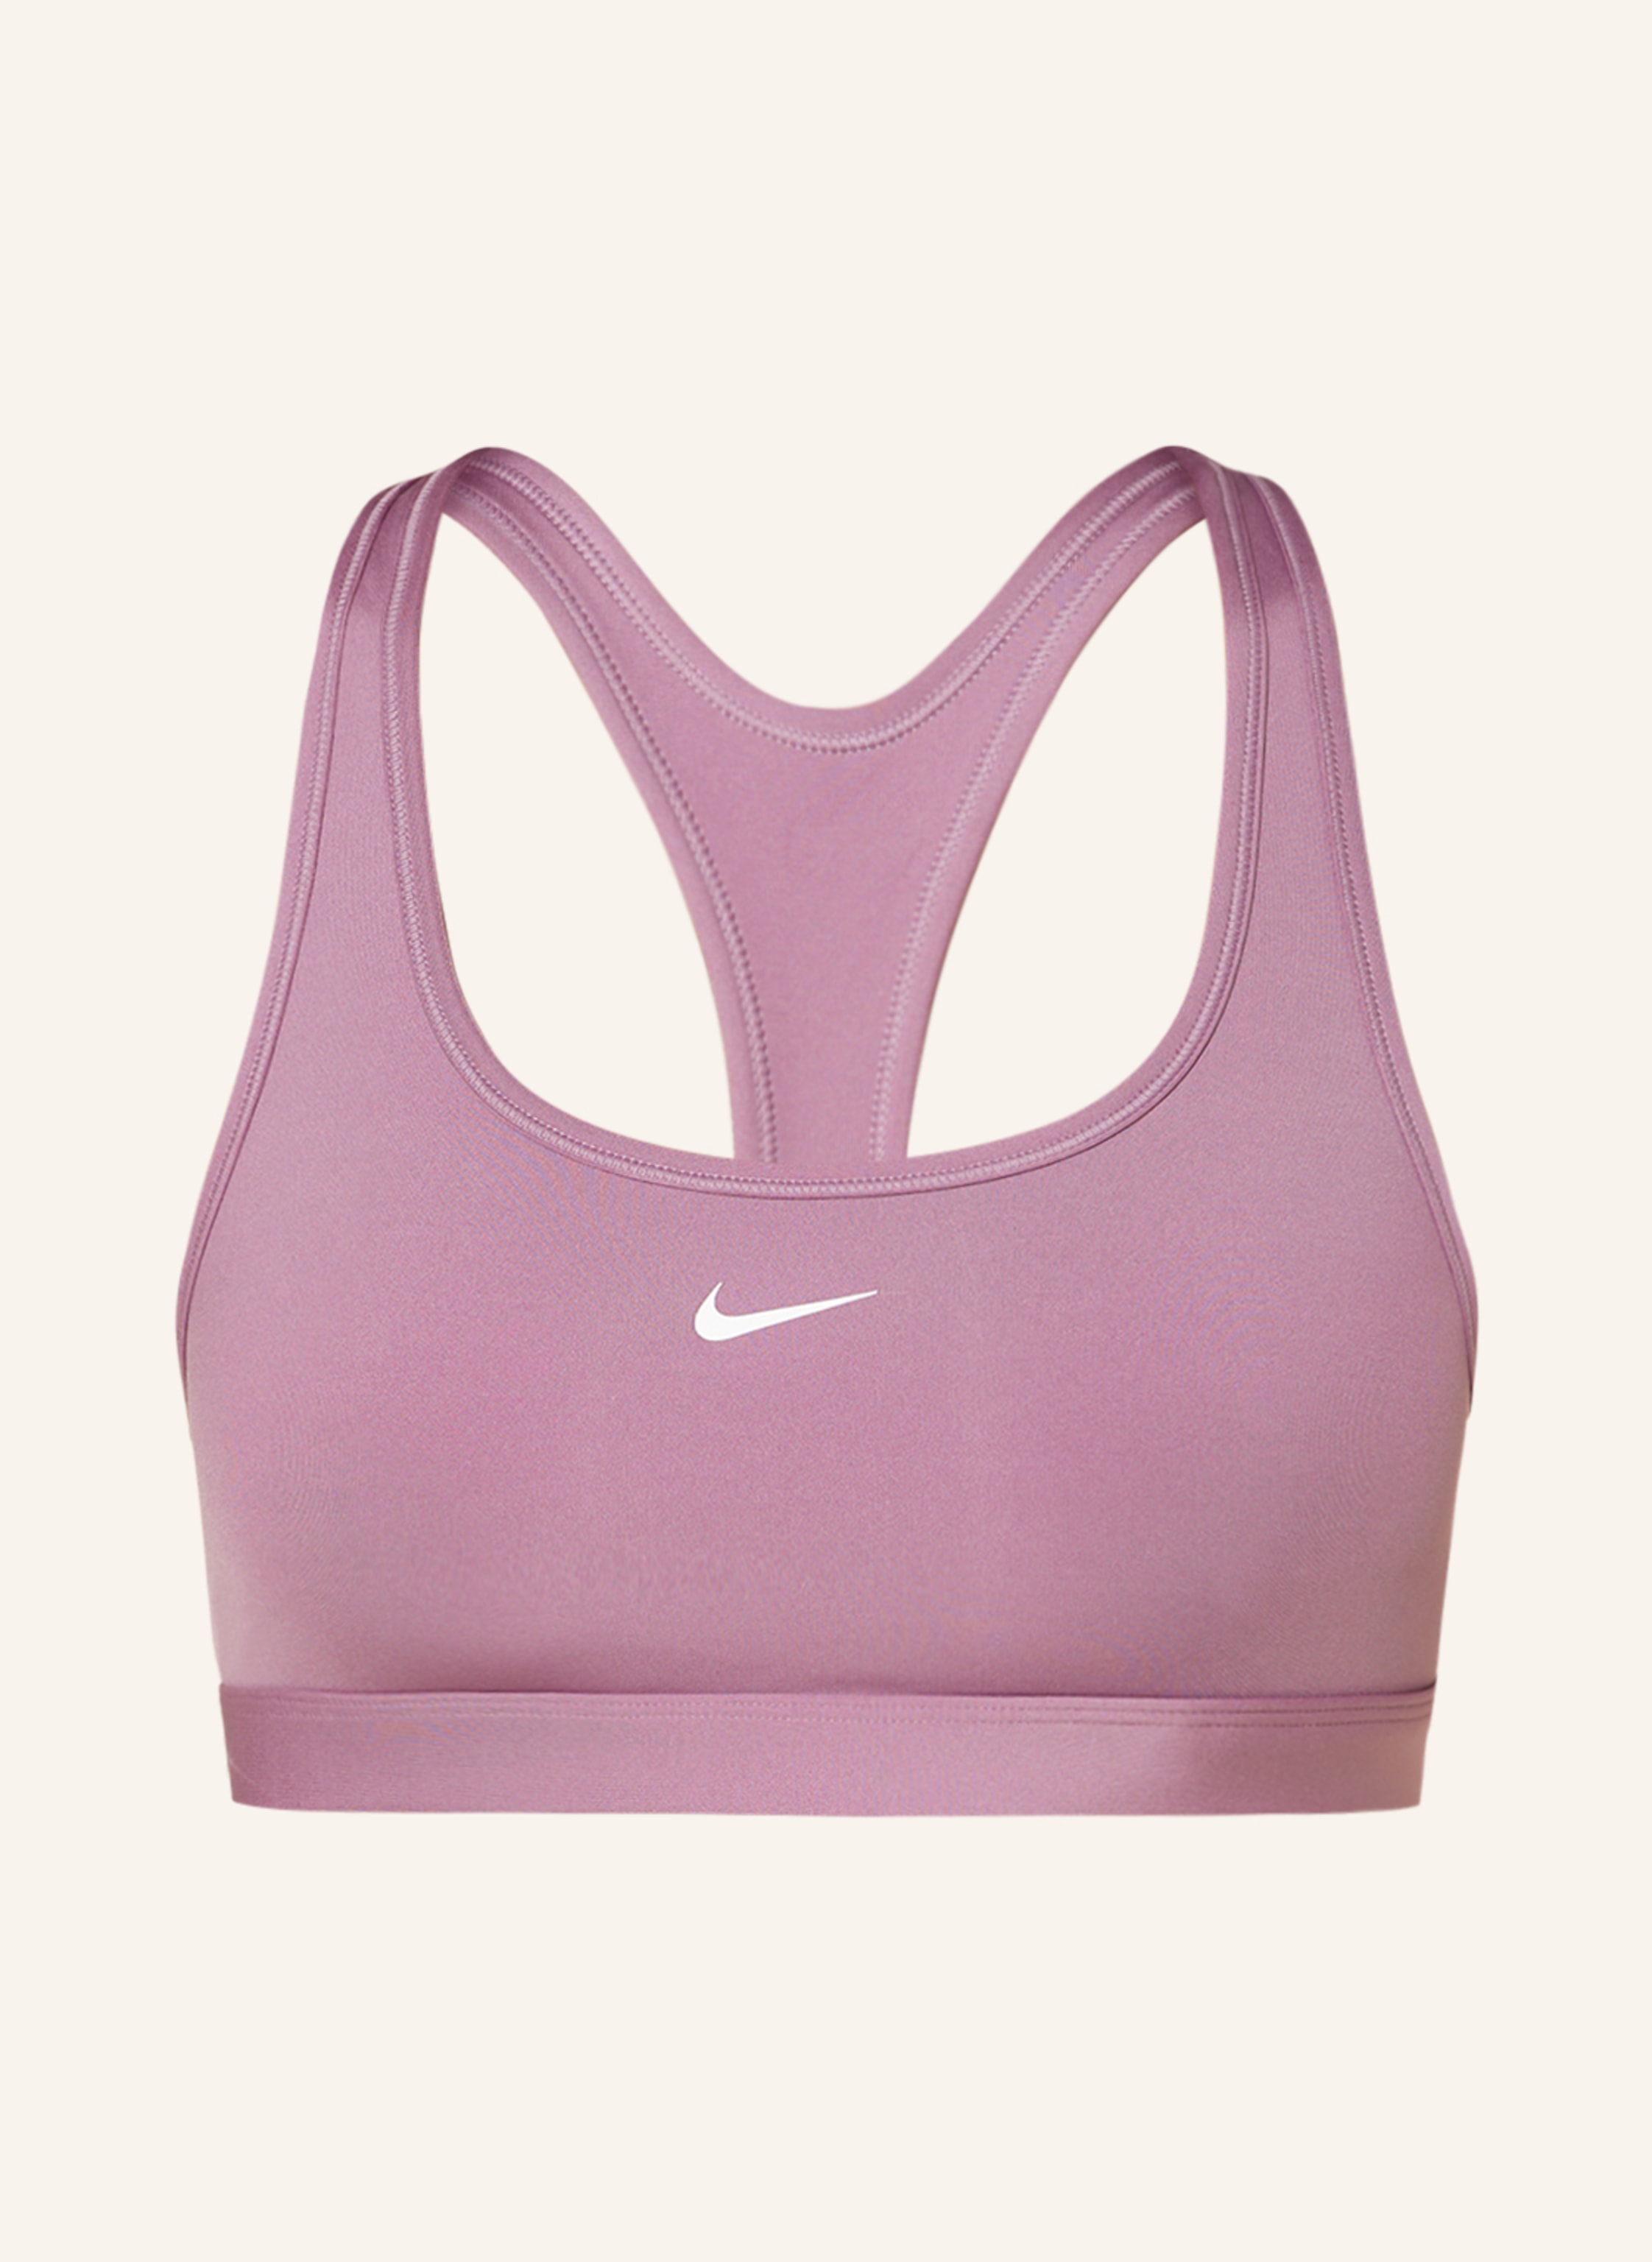 Nike Sports bra SWOOSH in purple